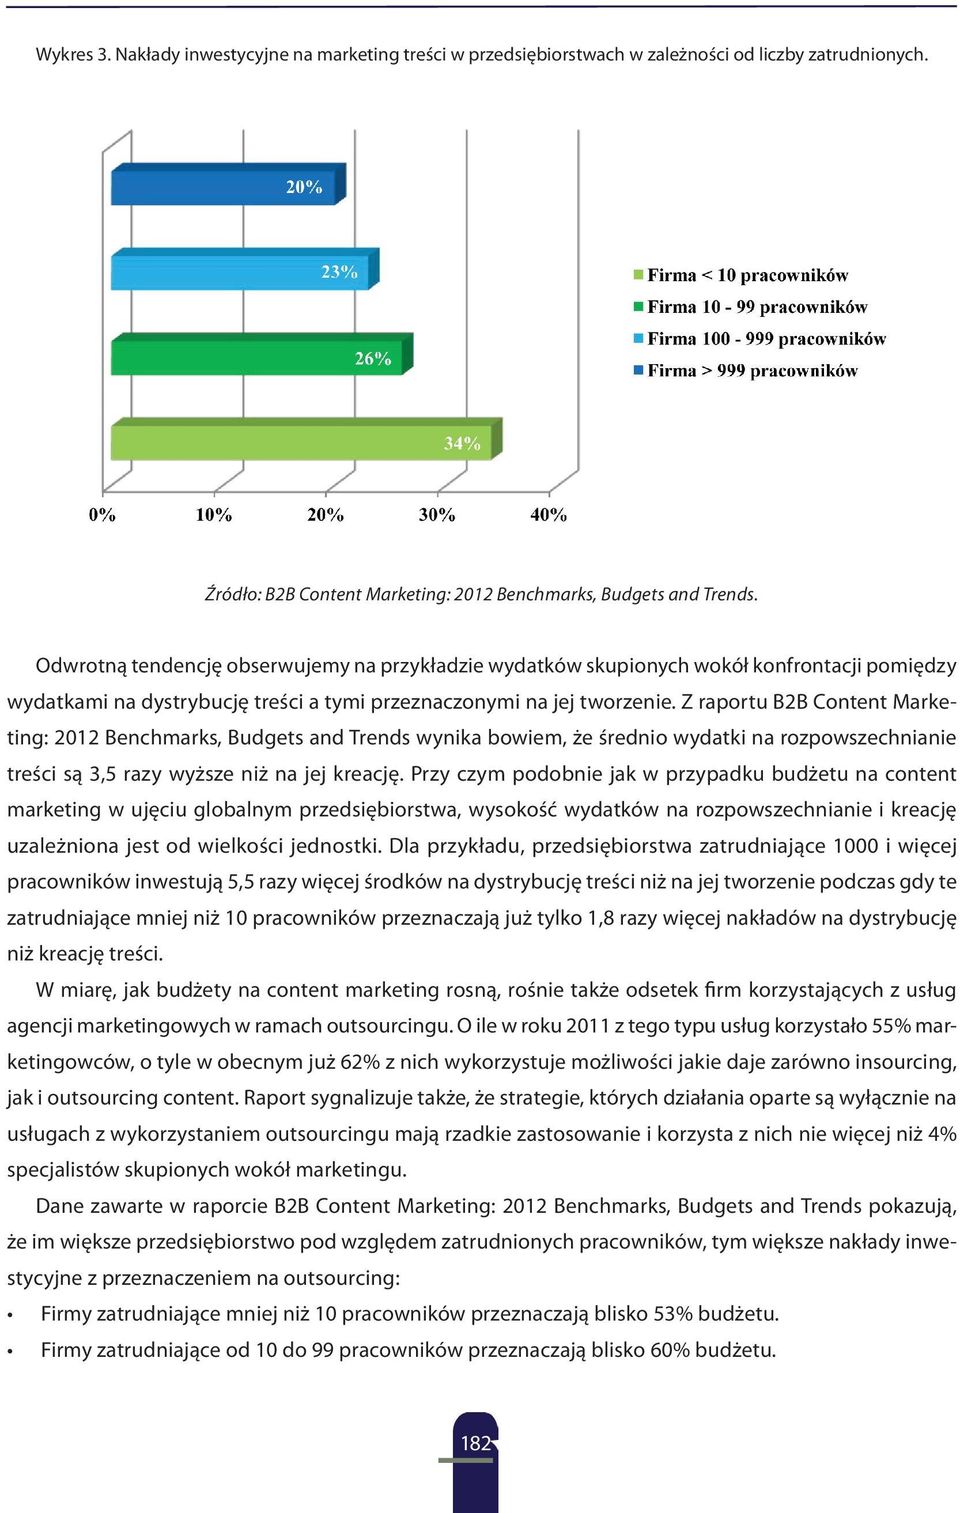 Z raportu B2B Content Marketing: 2012 Benchmarks, Budgets and Trends wynika bowiem, że średnio wydatki na rozpowszechnianie treści są 3,5 razy wyższe niż na jej kreację.